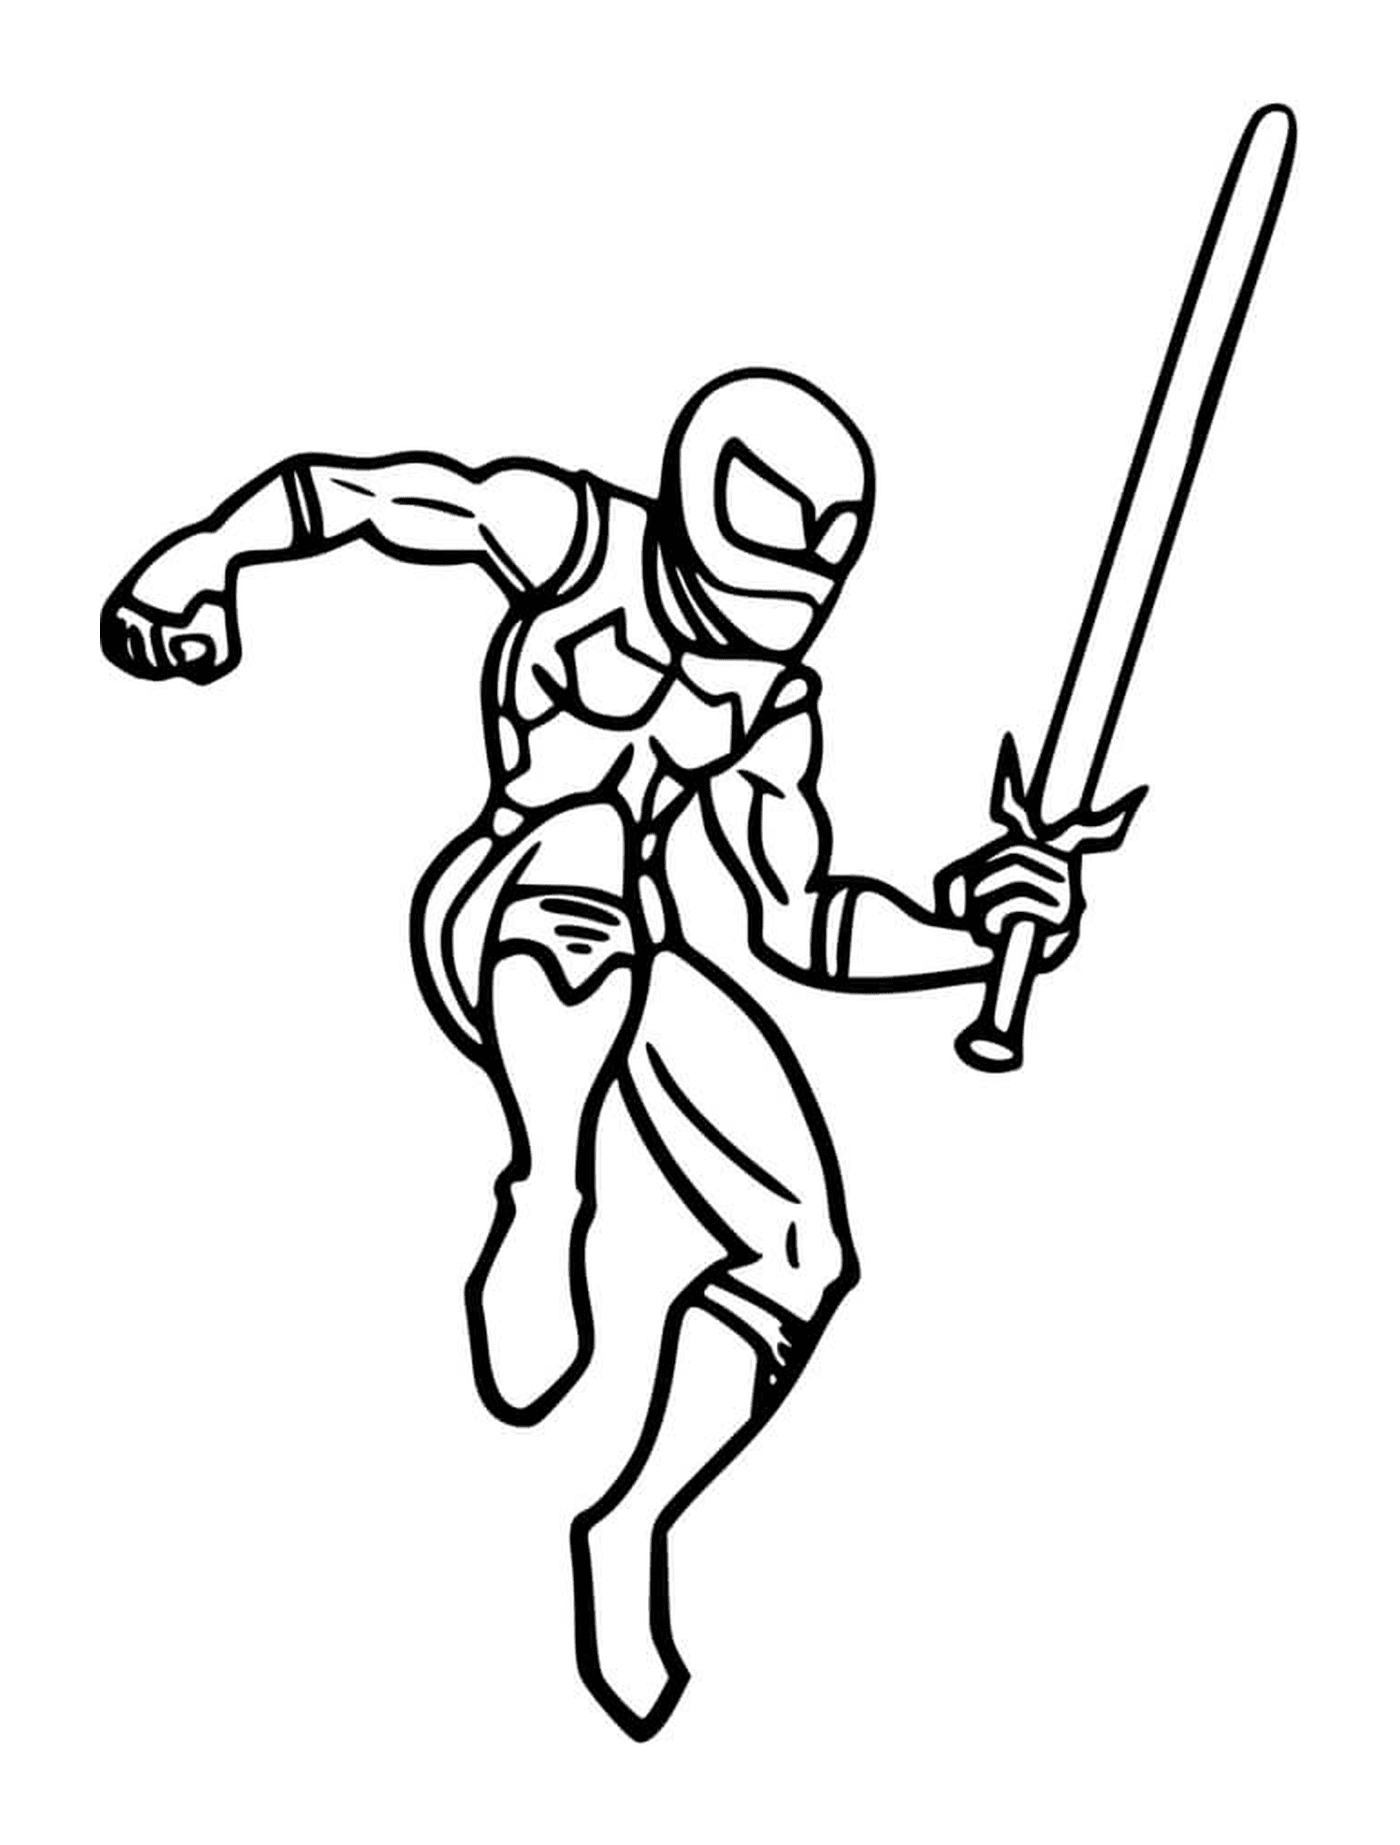   Ninja avec une épée 